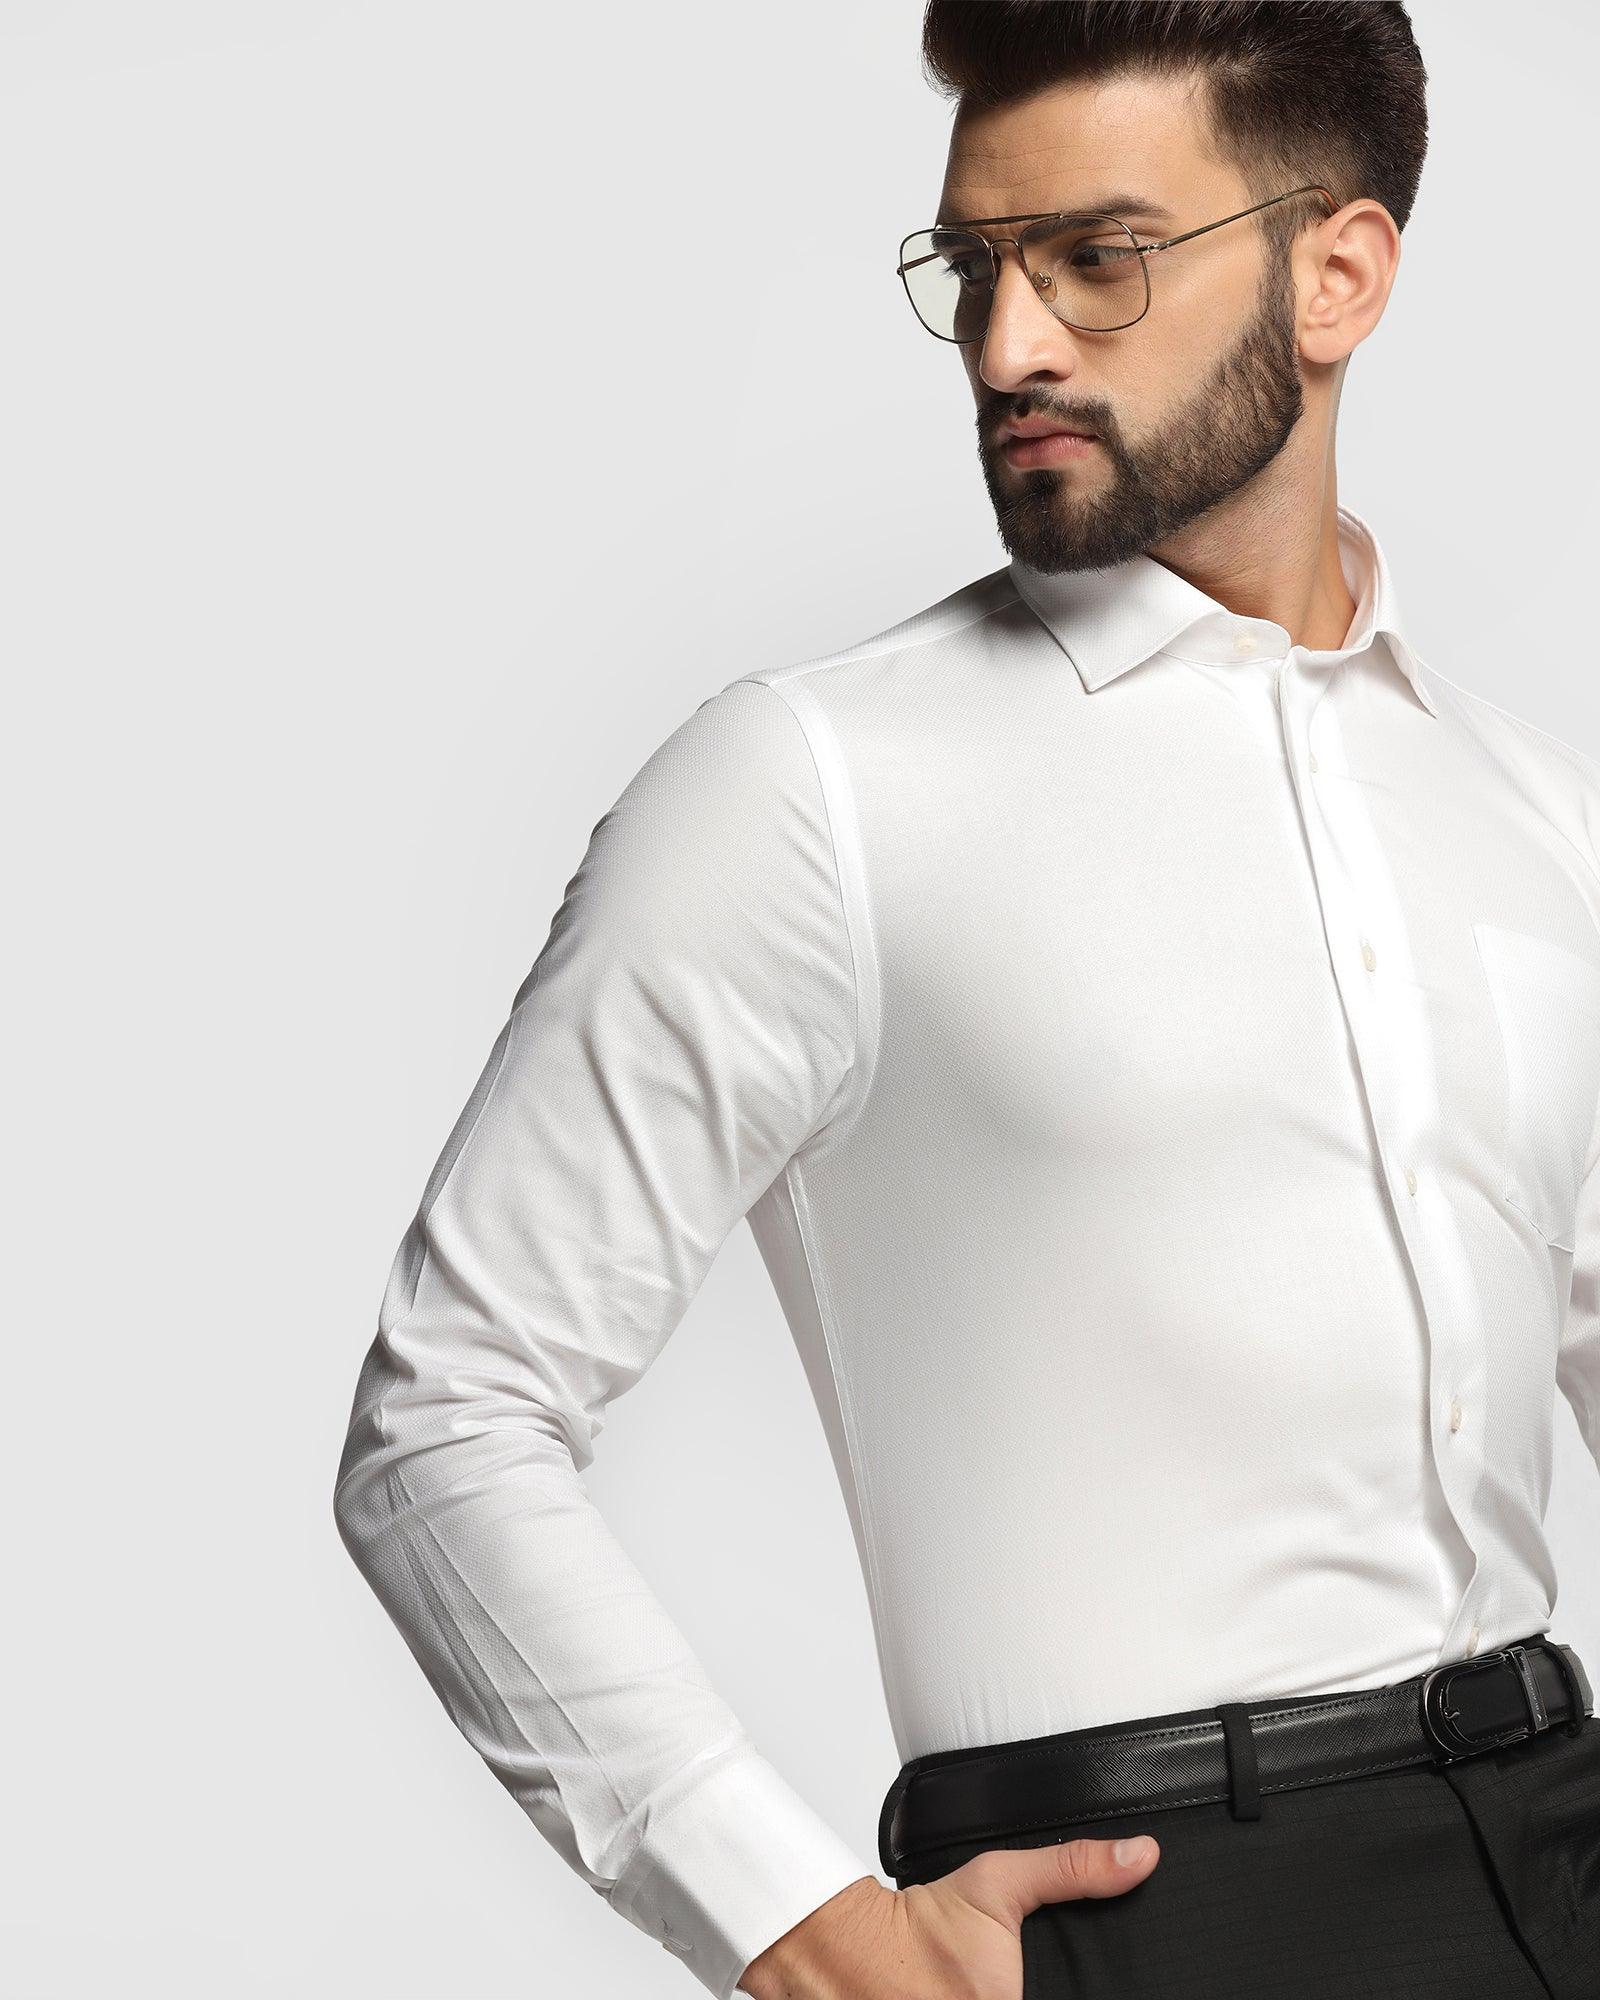 Formal White Textured Shirt - Warren